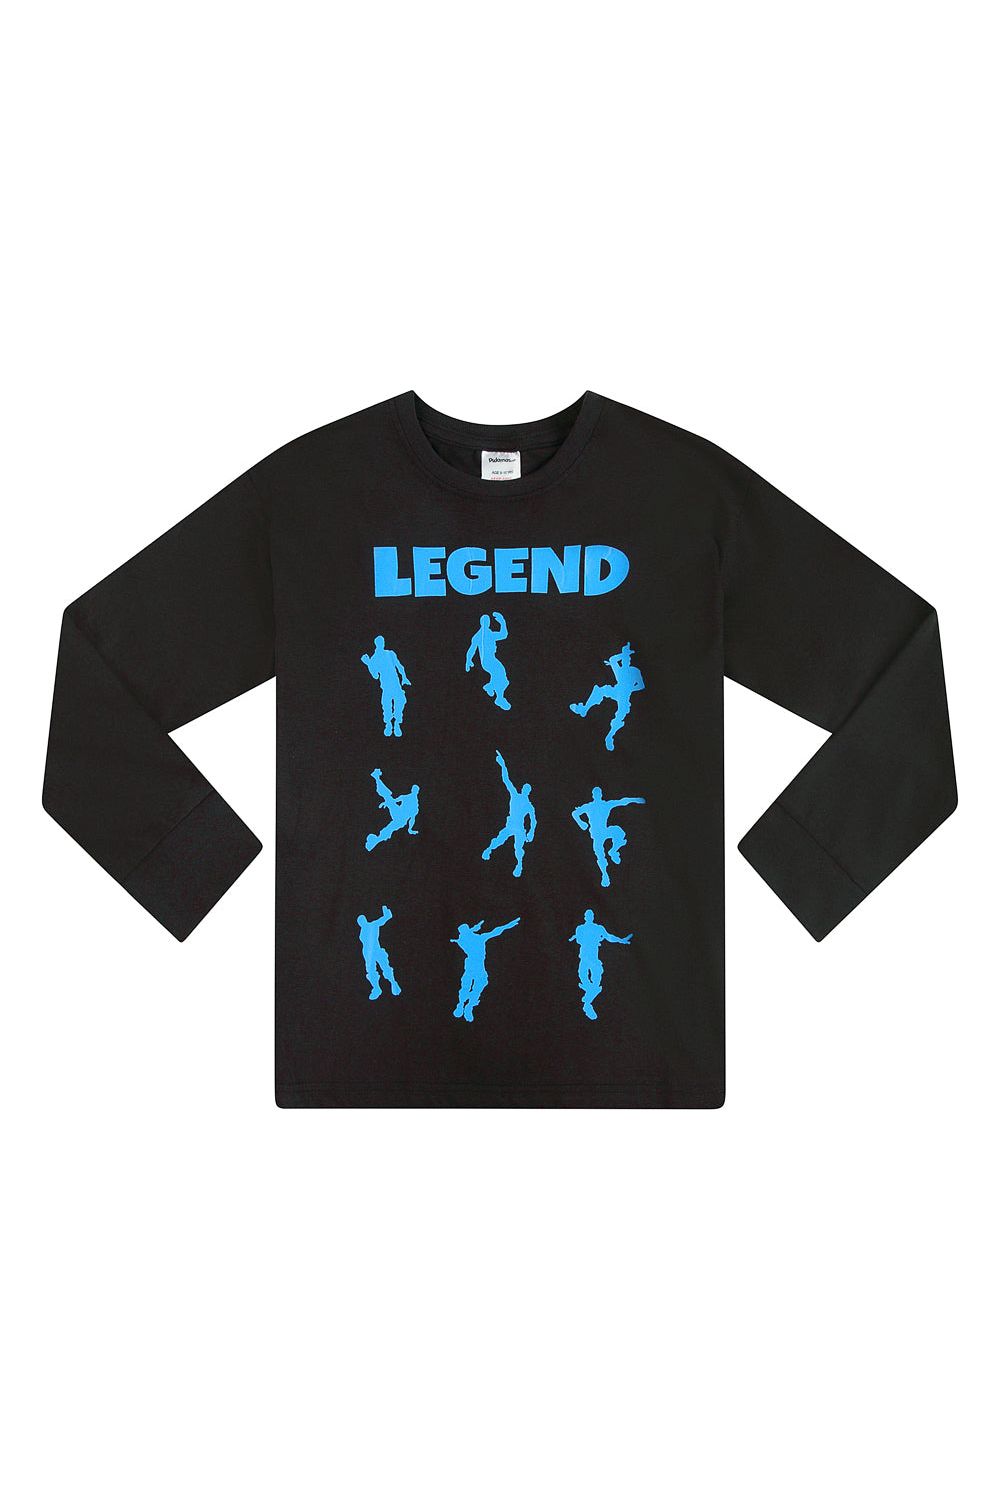 Legend Emote Dance Gaming Blue Long Pyjamas - Pyjamas.com